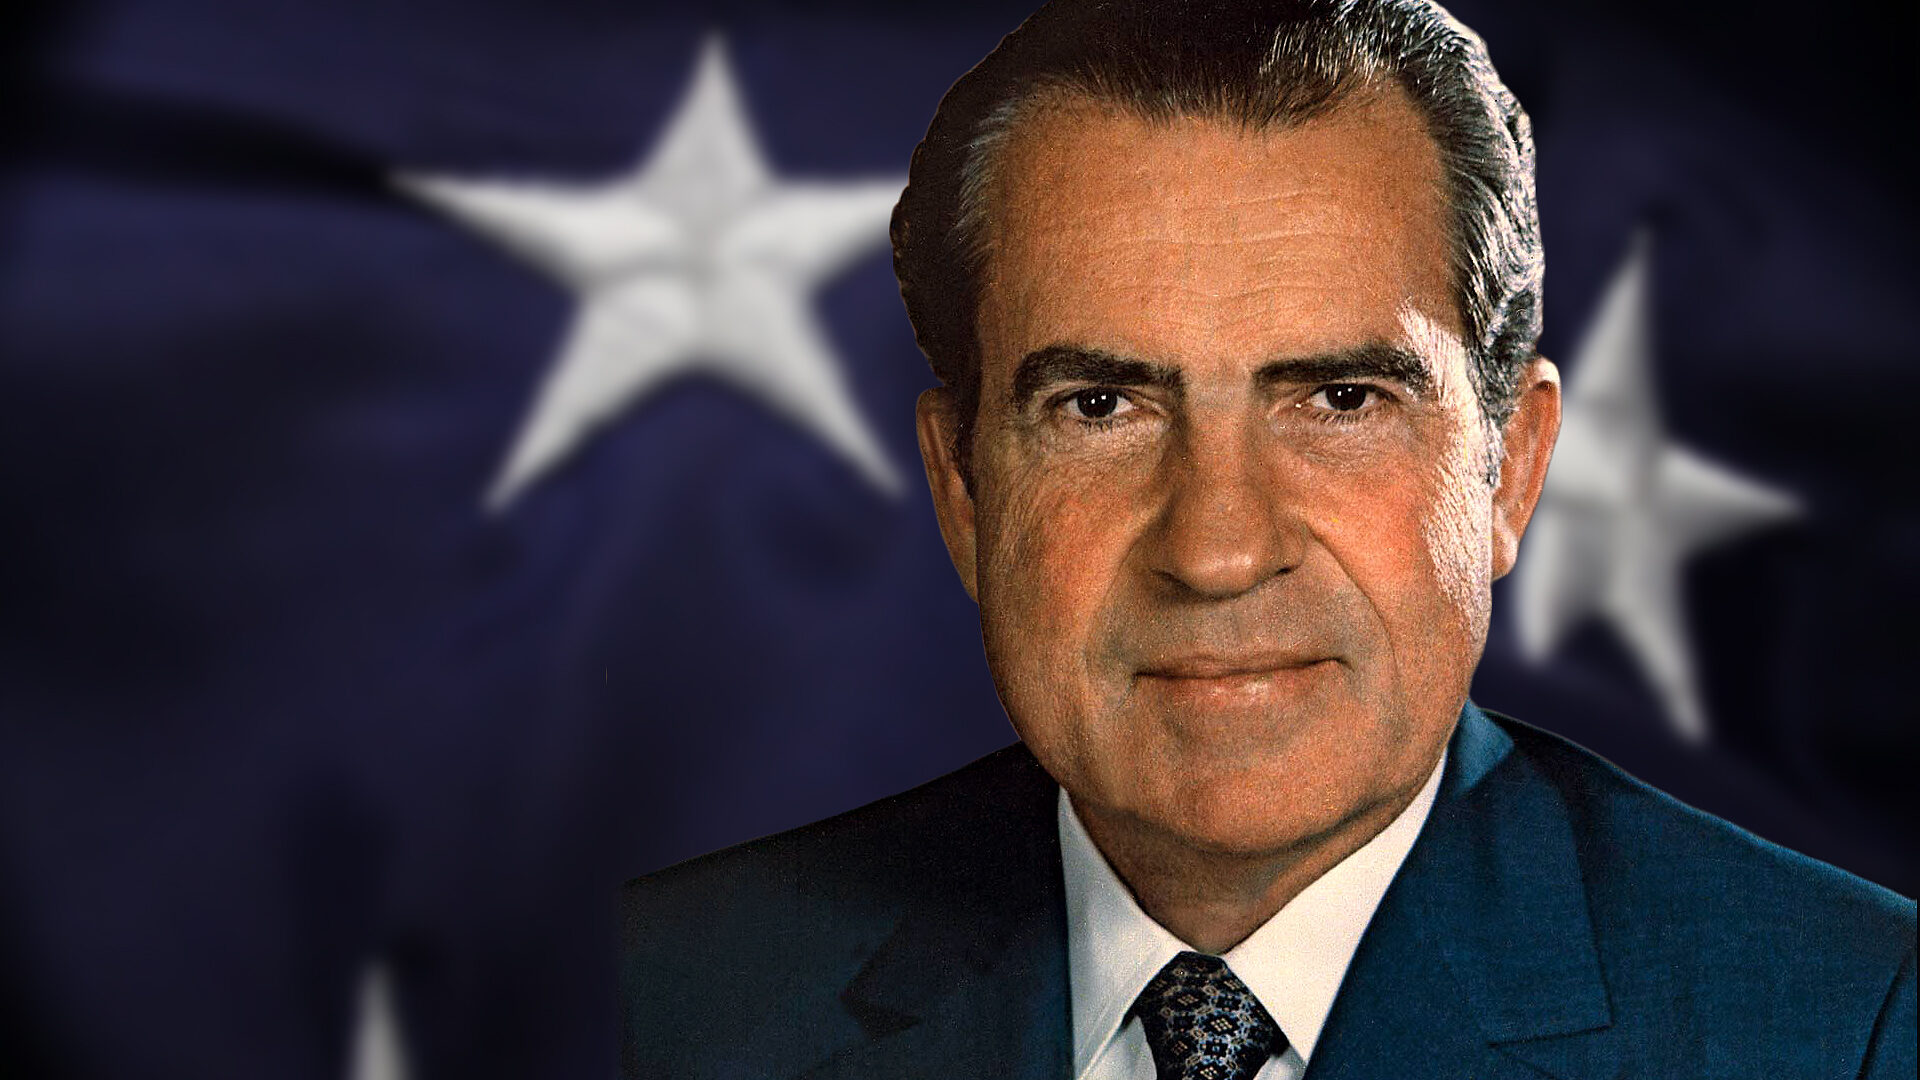 Tanti auguri Nixon, l’uomo eletto due volte Presidente degli USA e l’unico a dimettersi